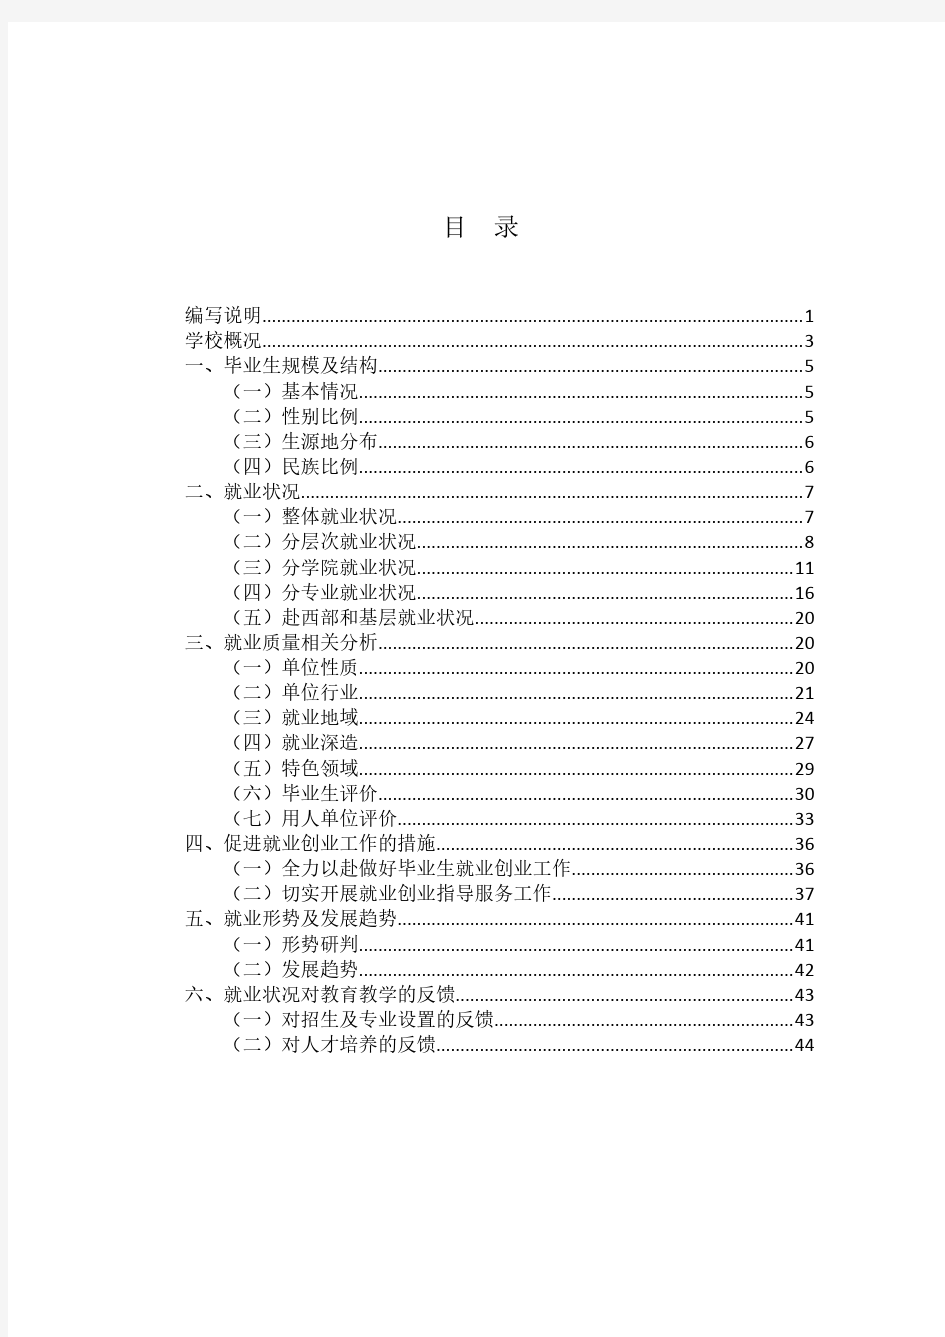 中国政法大学2014年毕业生就业质量年度报告